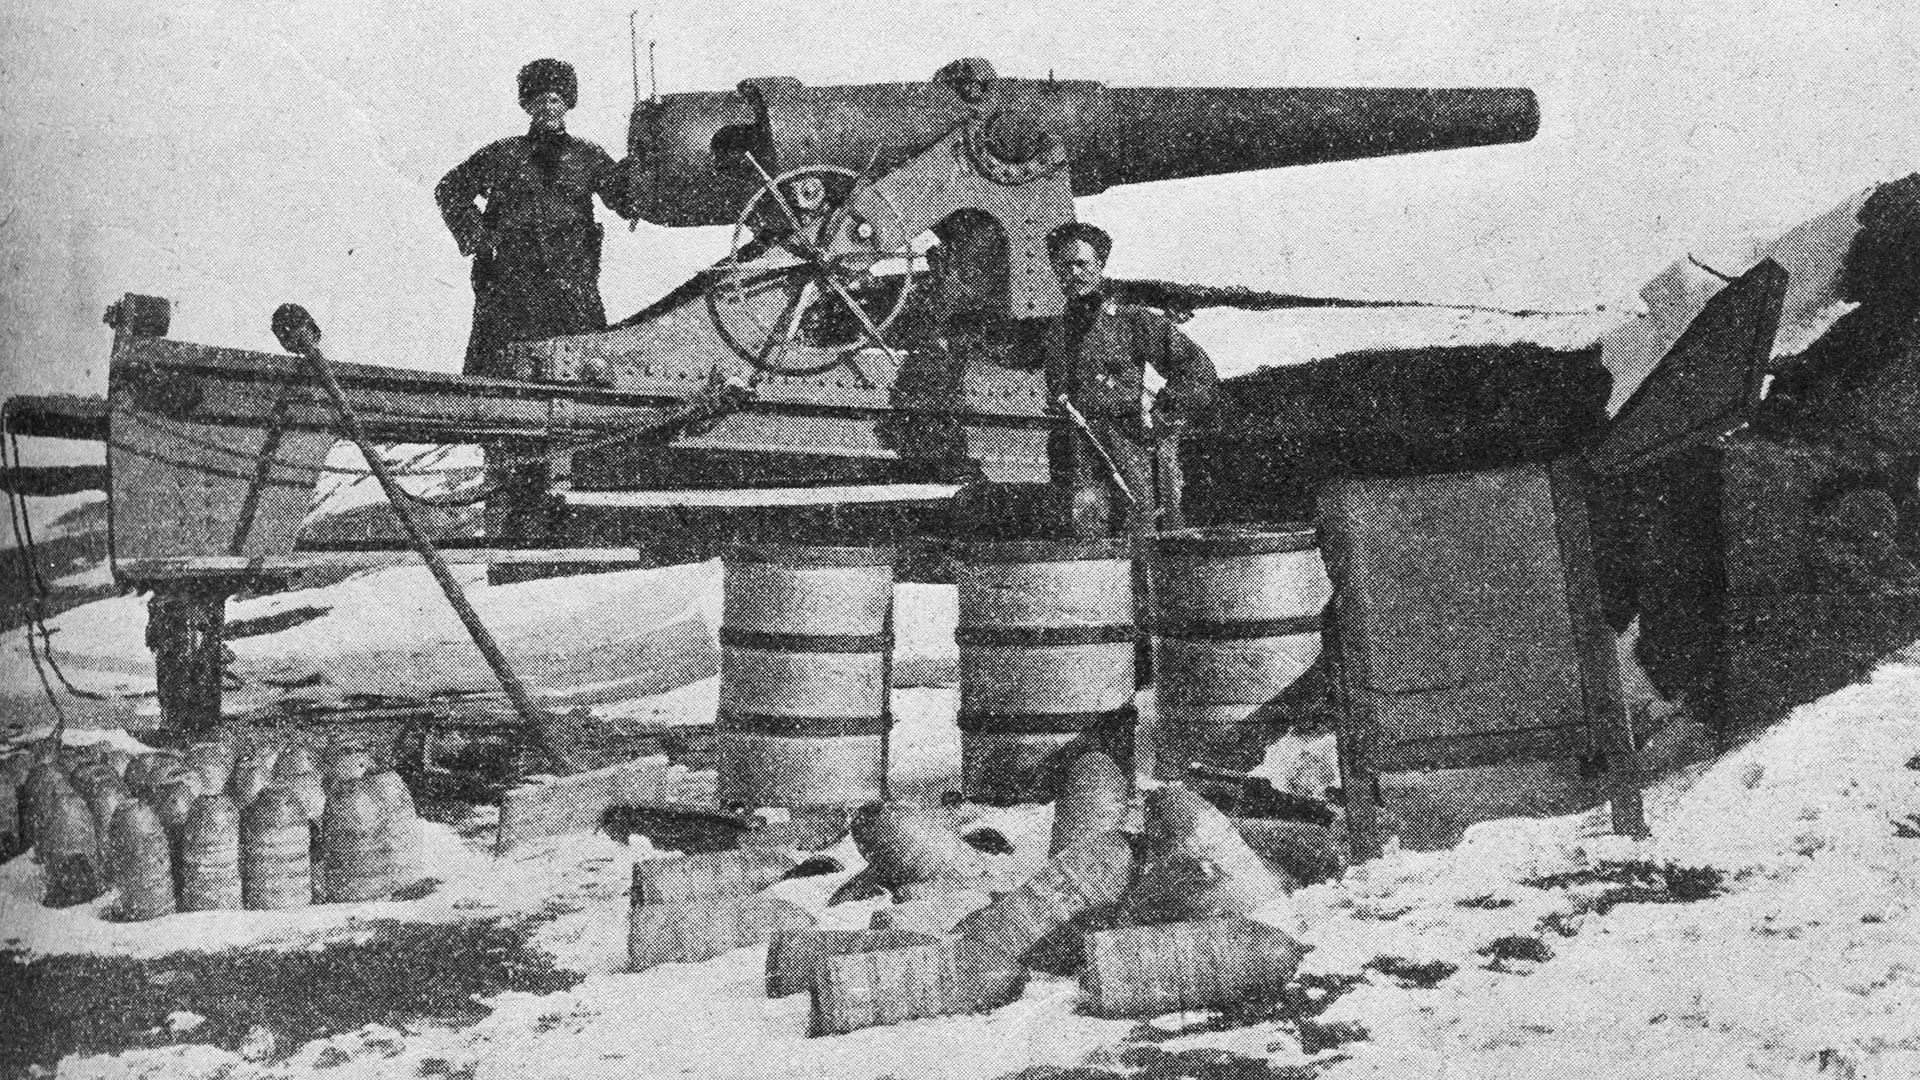 Трофејно турско оруђе у Ерзуруму који су руске трупе заузеле. Почетак 1916.